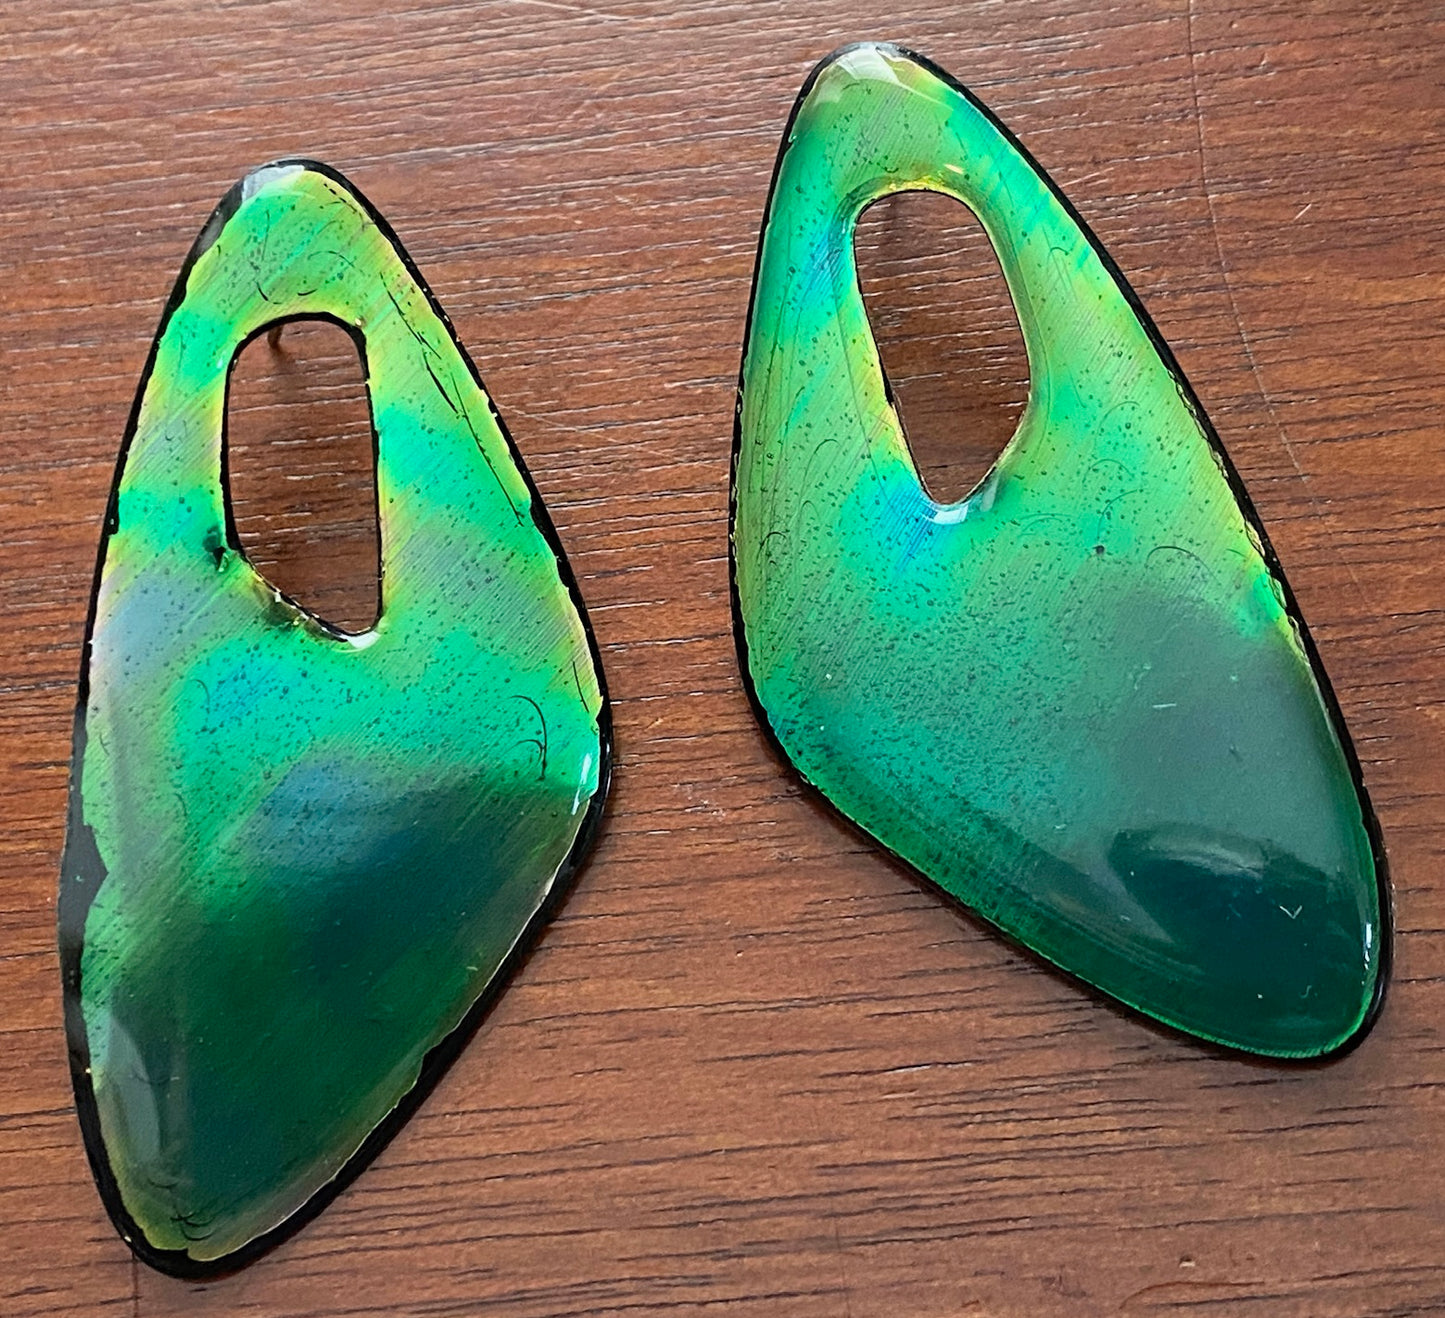 Vintage Fluorescent Toxic Green Enamel Abstract Pierced Earrings